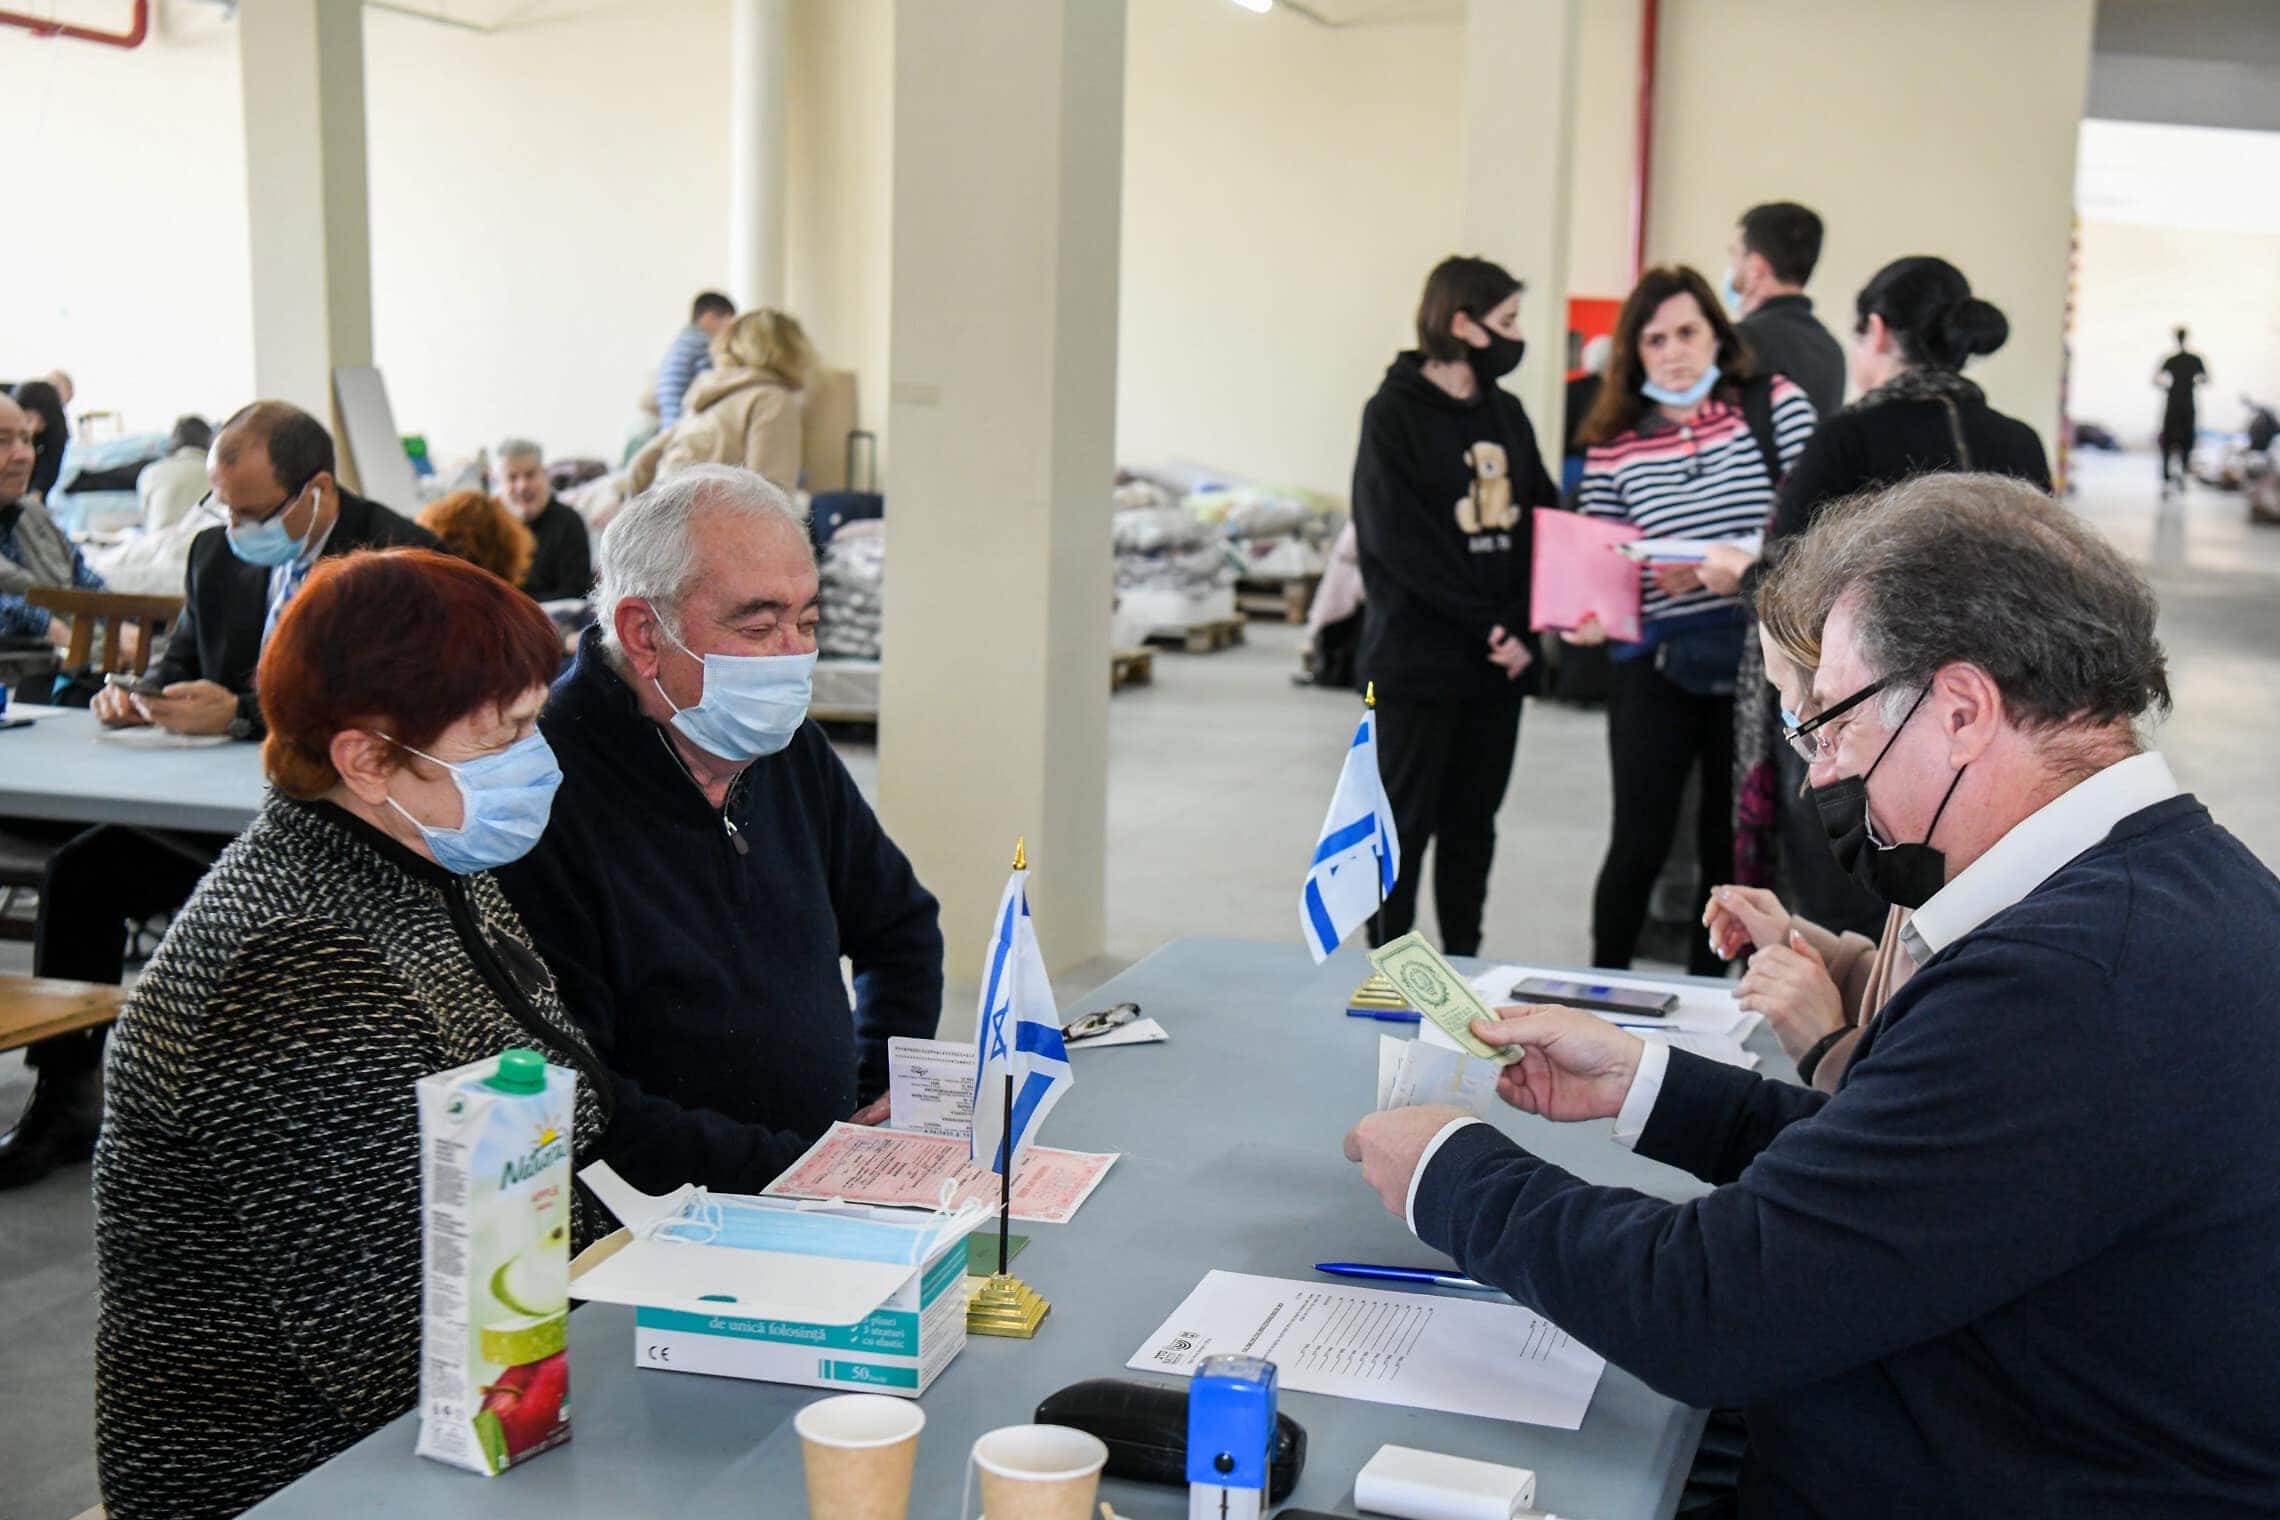 פליטים יהודים מאוקראינה מקבלים את אשרות הכניסה שלהם לישראל במקלט חירום בקישינב, מולדובה, 15 במרץ 2022 (צילום: פלאש90)